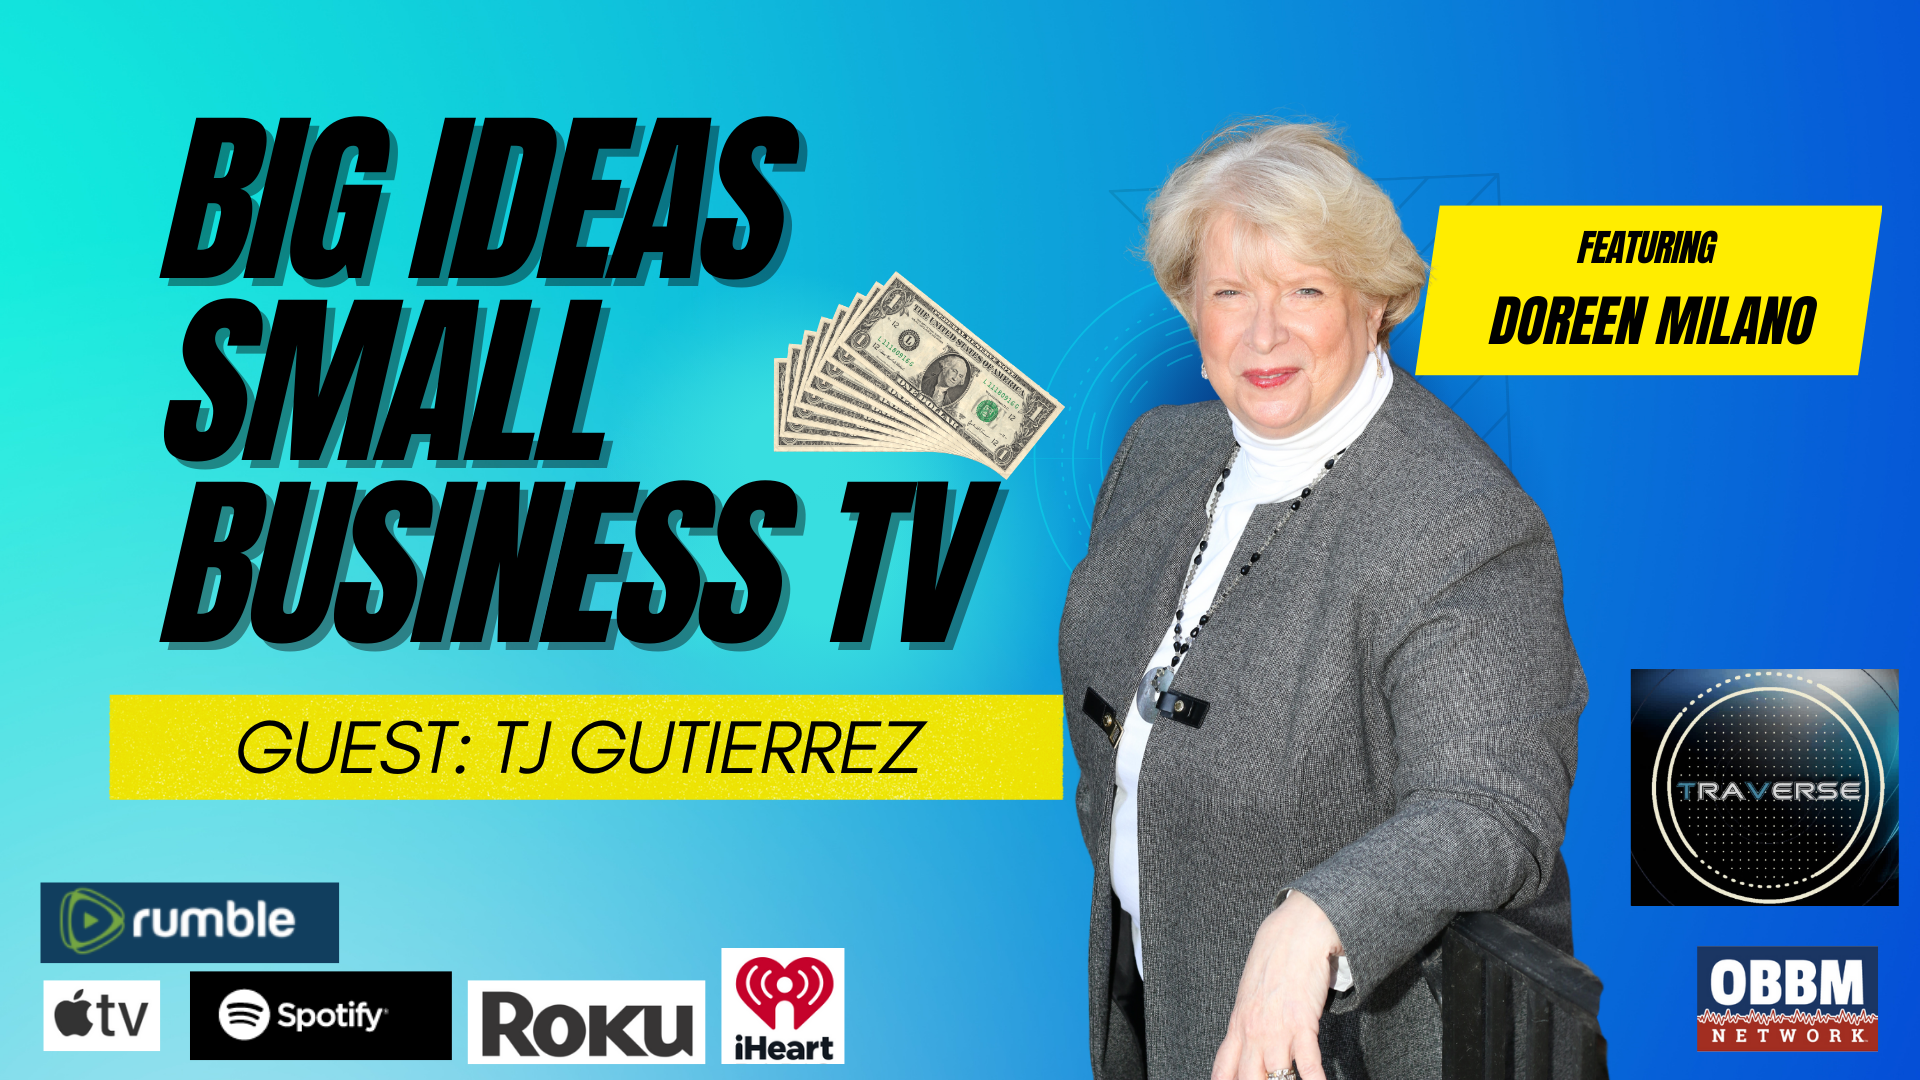 BISB17-AI Marketing Expert - TJ Gutierrez - Big Ideas Small Business TV